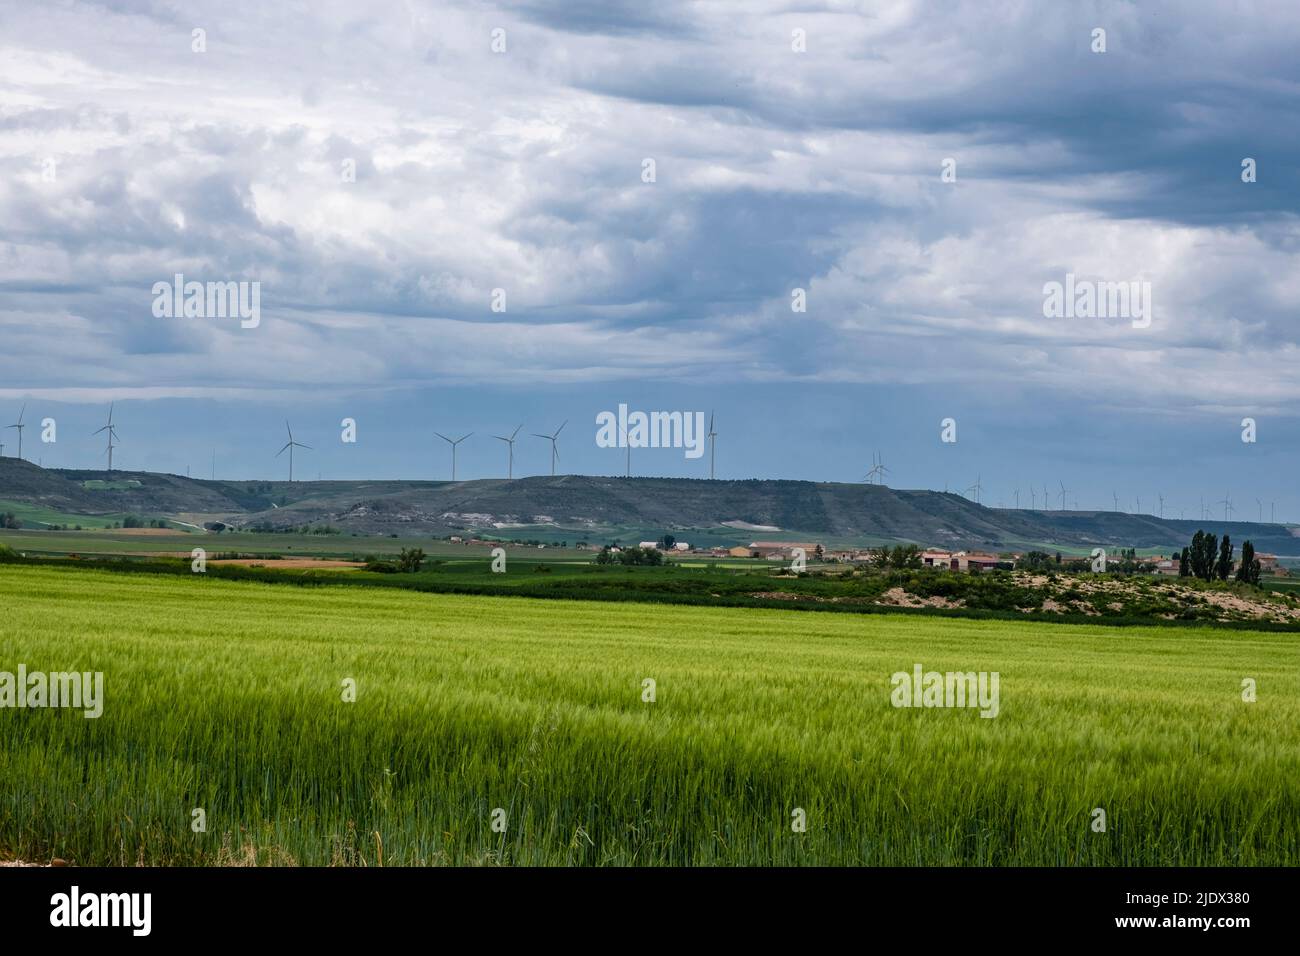 Spanien, Castrojeriz, Castilla y Leon. Erneuerbare Energie: Windmühlen säumten das Wappen eines Hügels in der Nähe von Castrojeriz. Stockfoto